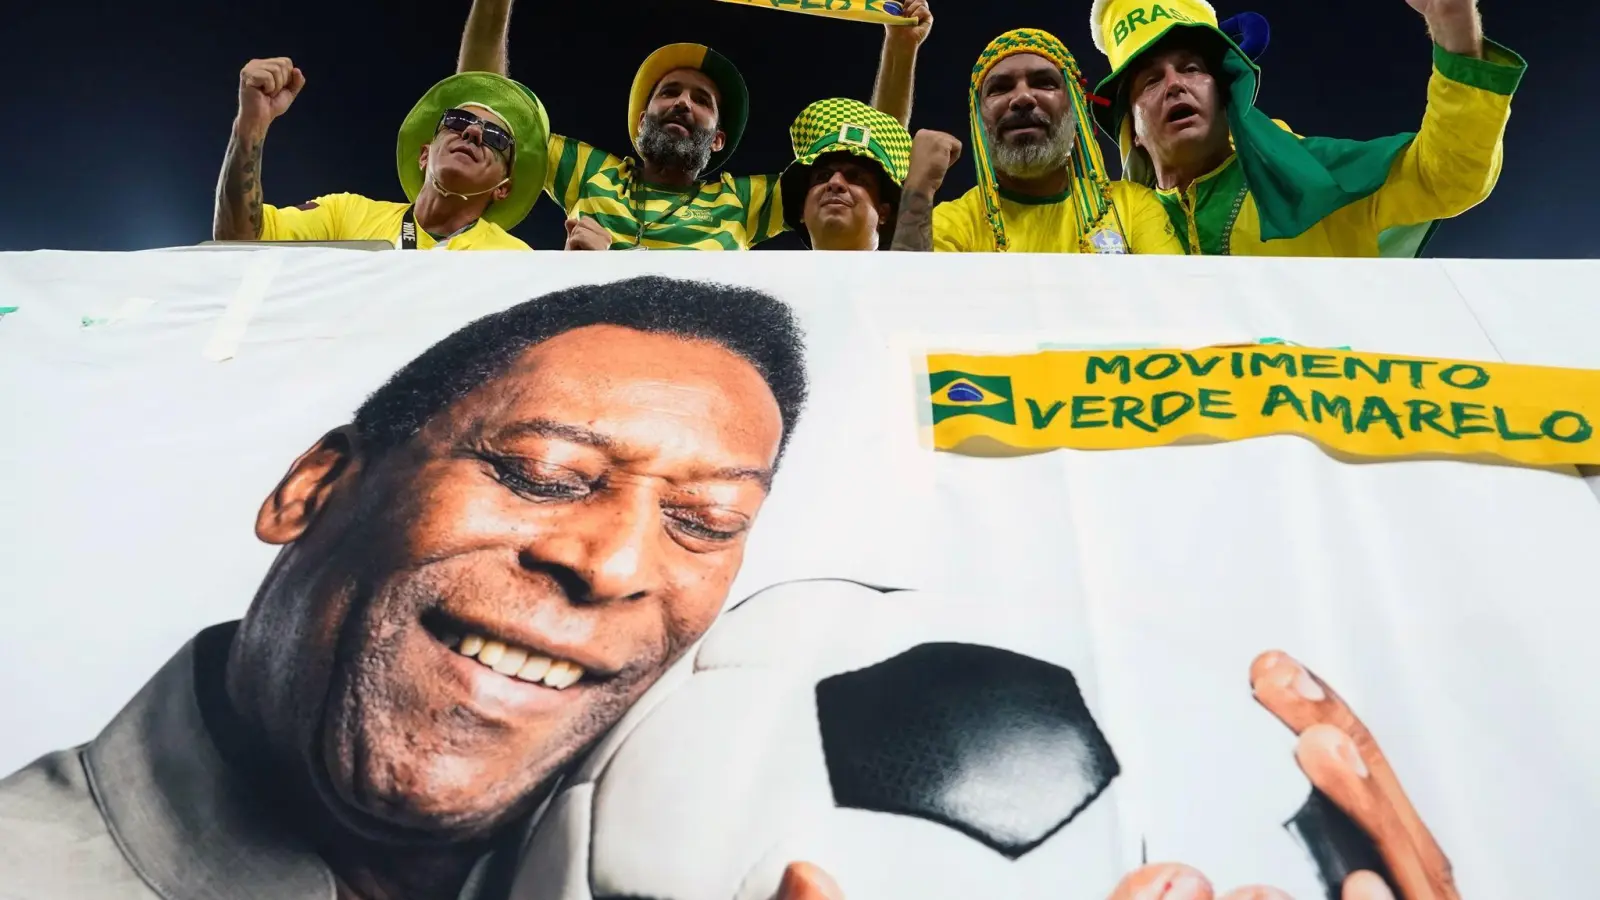 Der Gesundheitszustand von Fußball-Legende Pelé soll sich verschlechtert haben. (Foto: Martin Rickett/PA Wire/dpa)